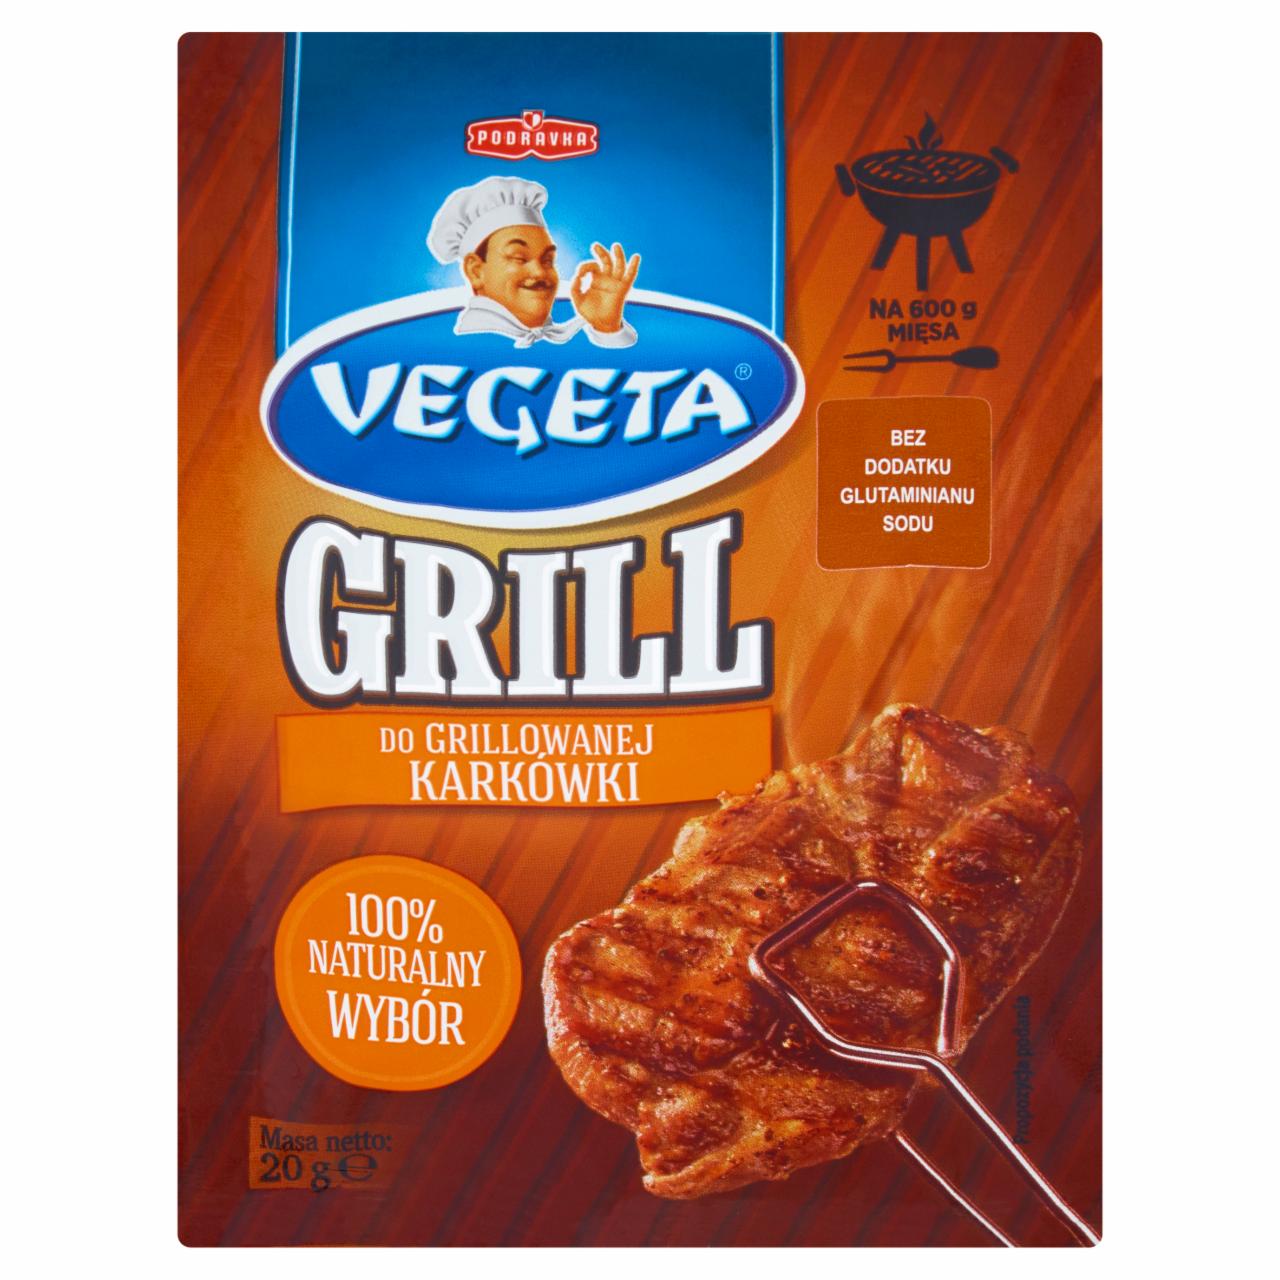 Zdjęcia - Vegeta Grill Przyprawa do grillowanej karkówki 20 g